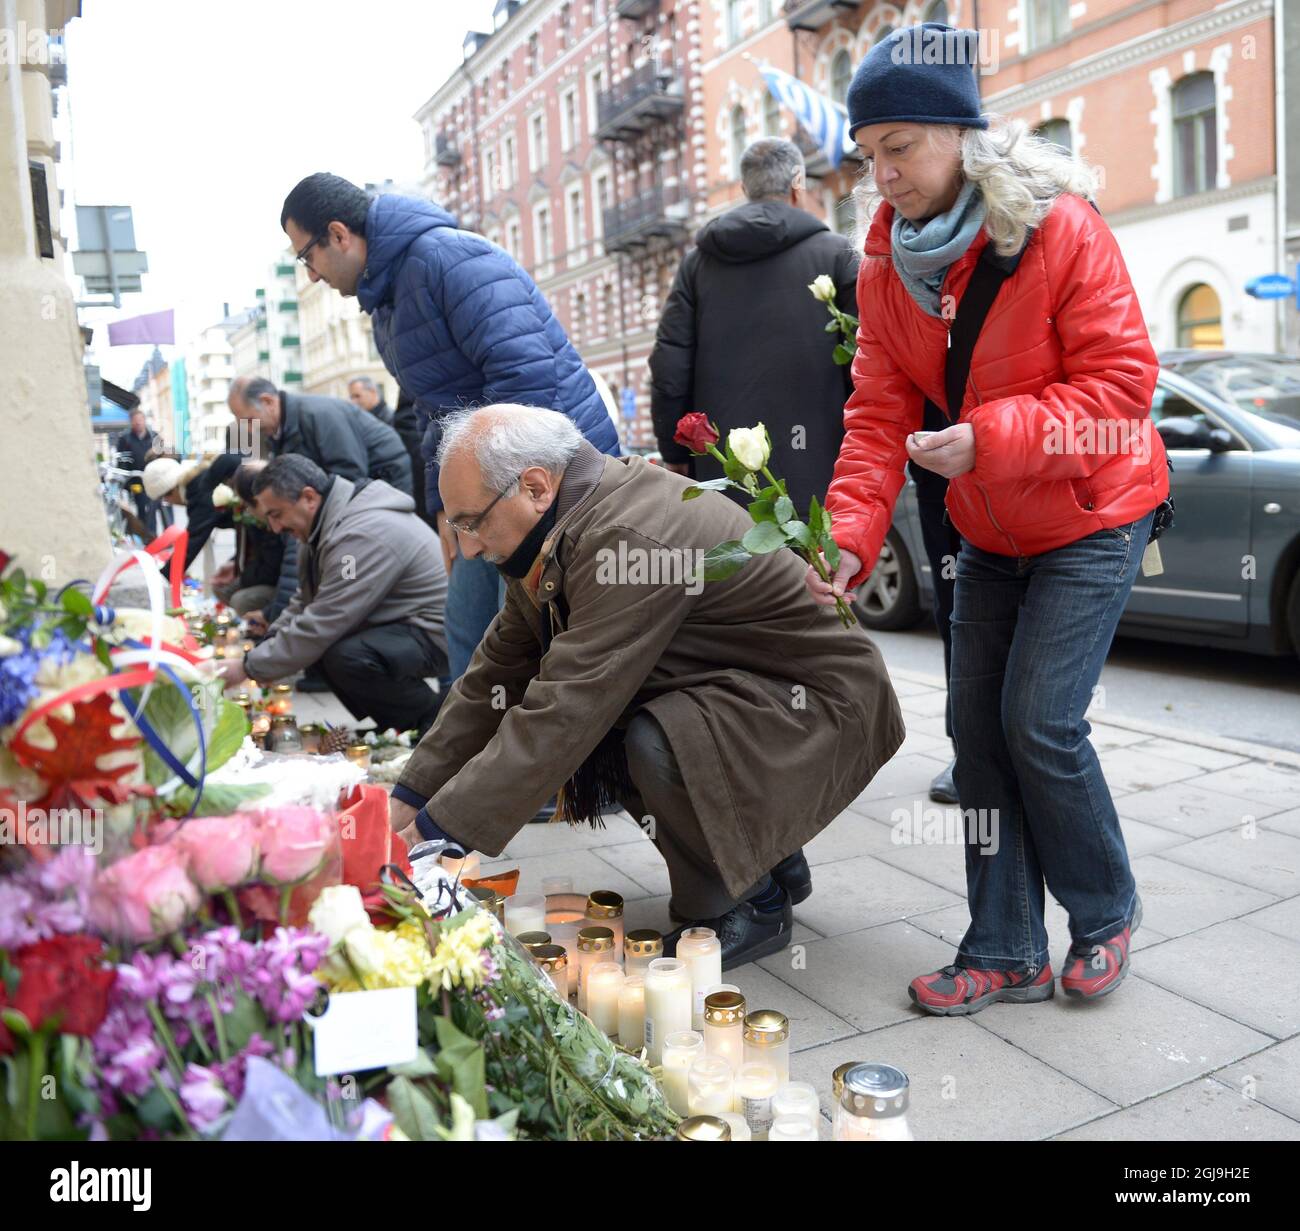 STOCCOLMA 2015-11-16 persone sono viste mettere fiori fuori l'ambasciata francese a Stoccolma, Svezia, 16 novembre 2015. Foto Maja Suslin / TT kod 10300 Foto Stock